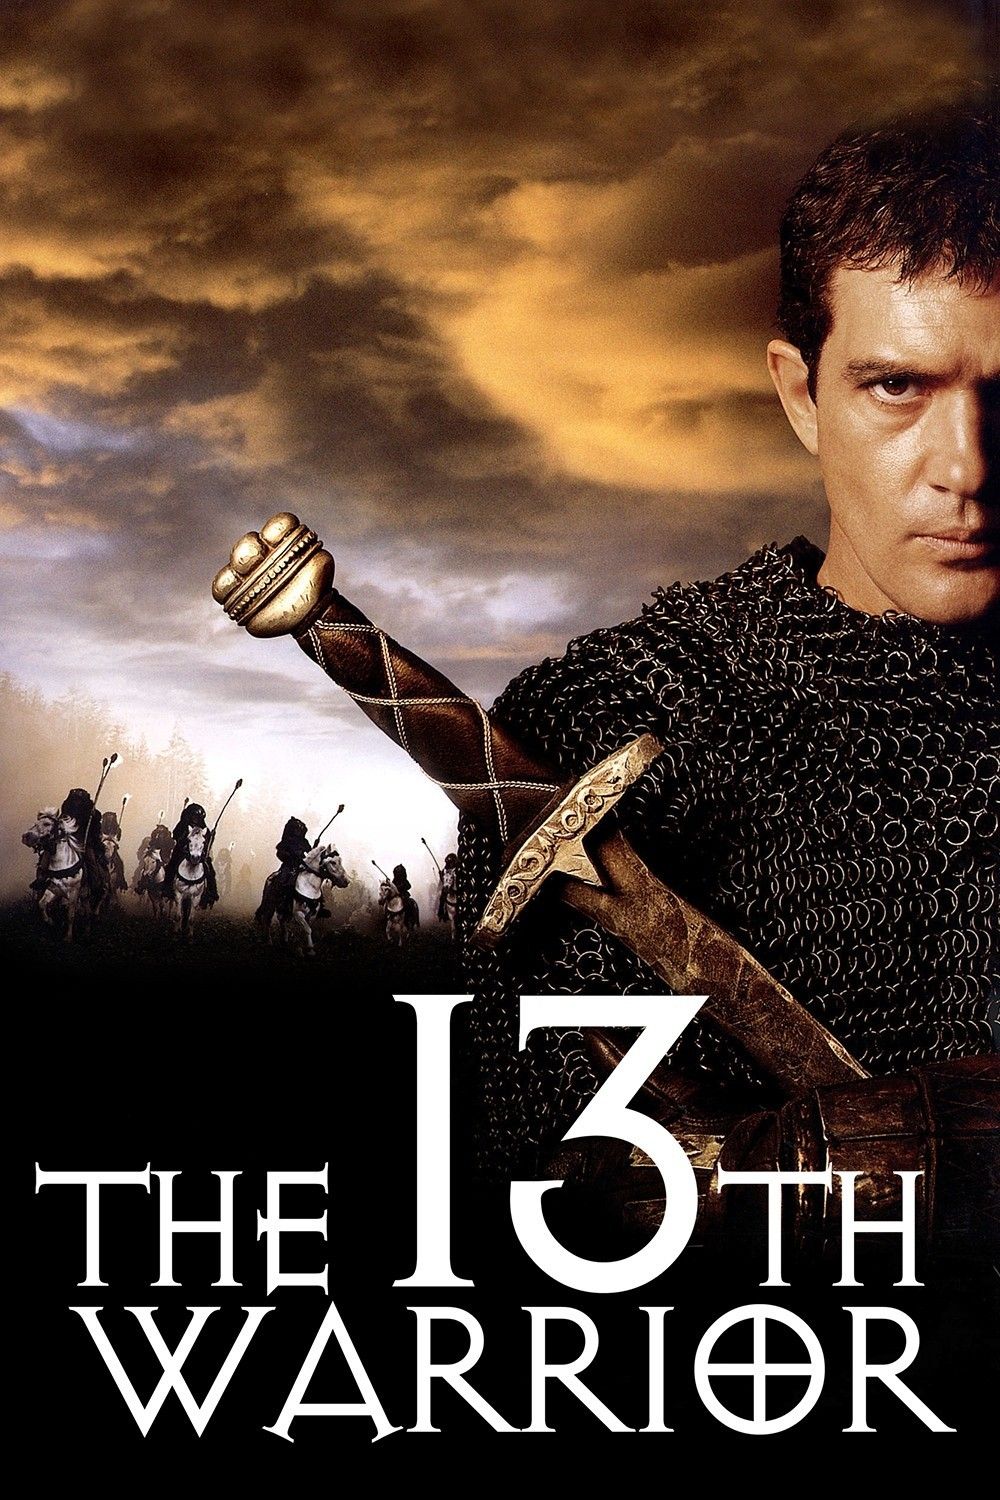 ดูหนังออนไลน์ฟรี The 13th Warrior (1999) พลิกตำนานสงครามมรณะ